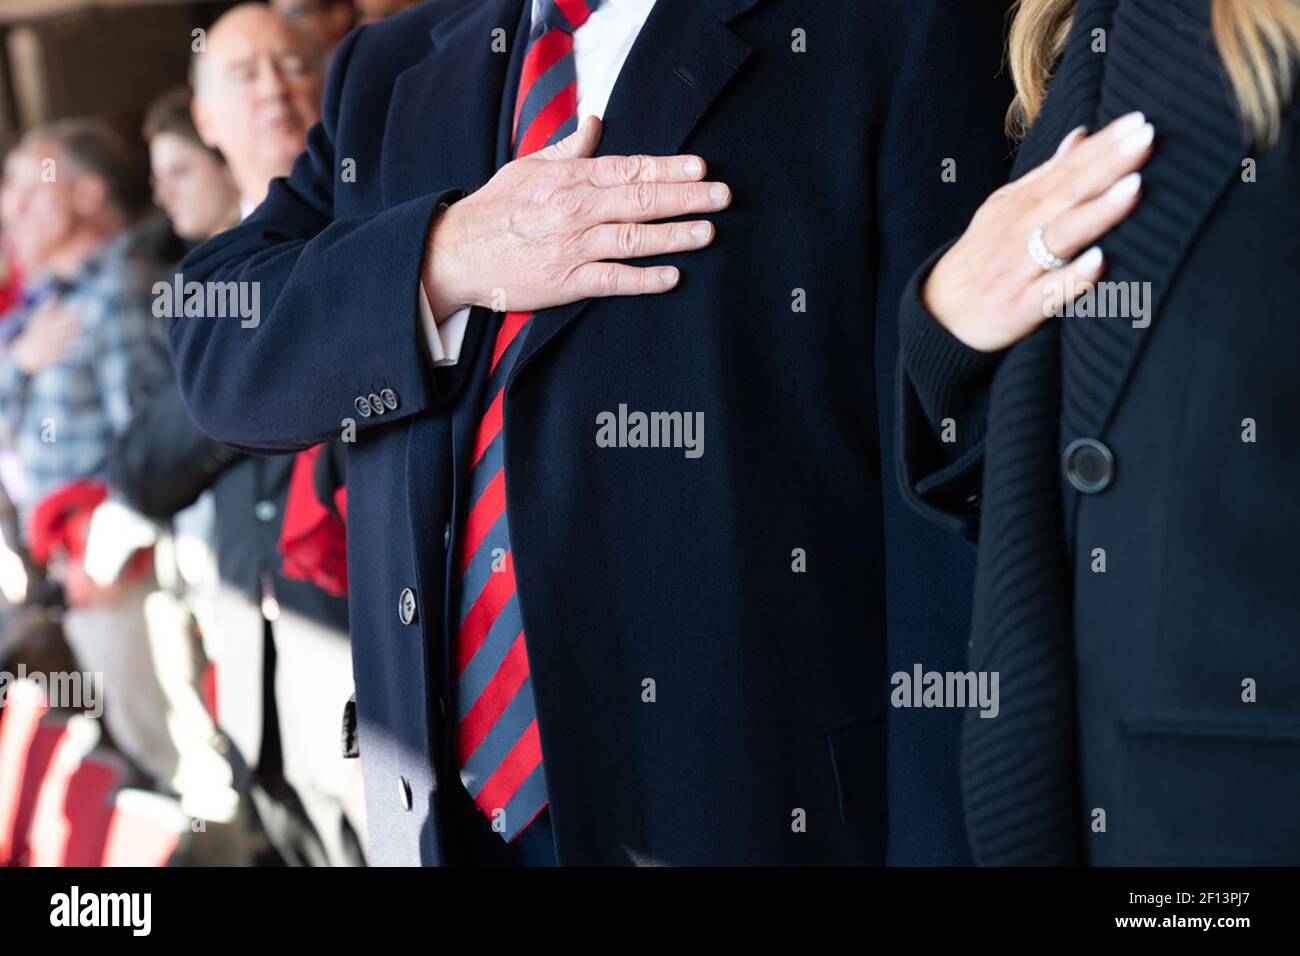 Le président Donald Trump et la première dame Melania Trump tiennent leurs mains à cœur au stade Bryant-Denny, le samedi 9 2019 novembre, tout en assistant au match de football de l'Université d'État de l'Alabama et de la Louisiane à Tuscaloosa Ala Banque D'Images